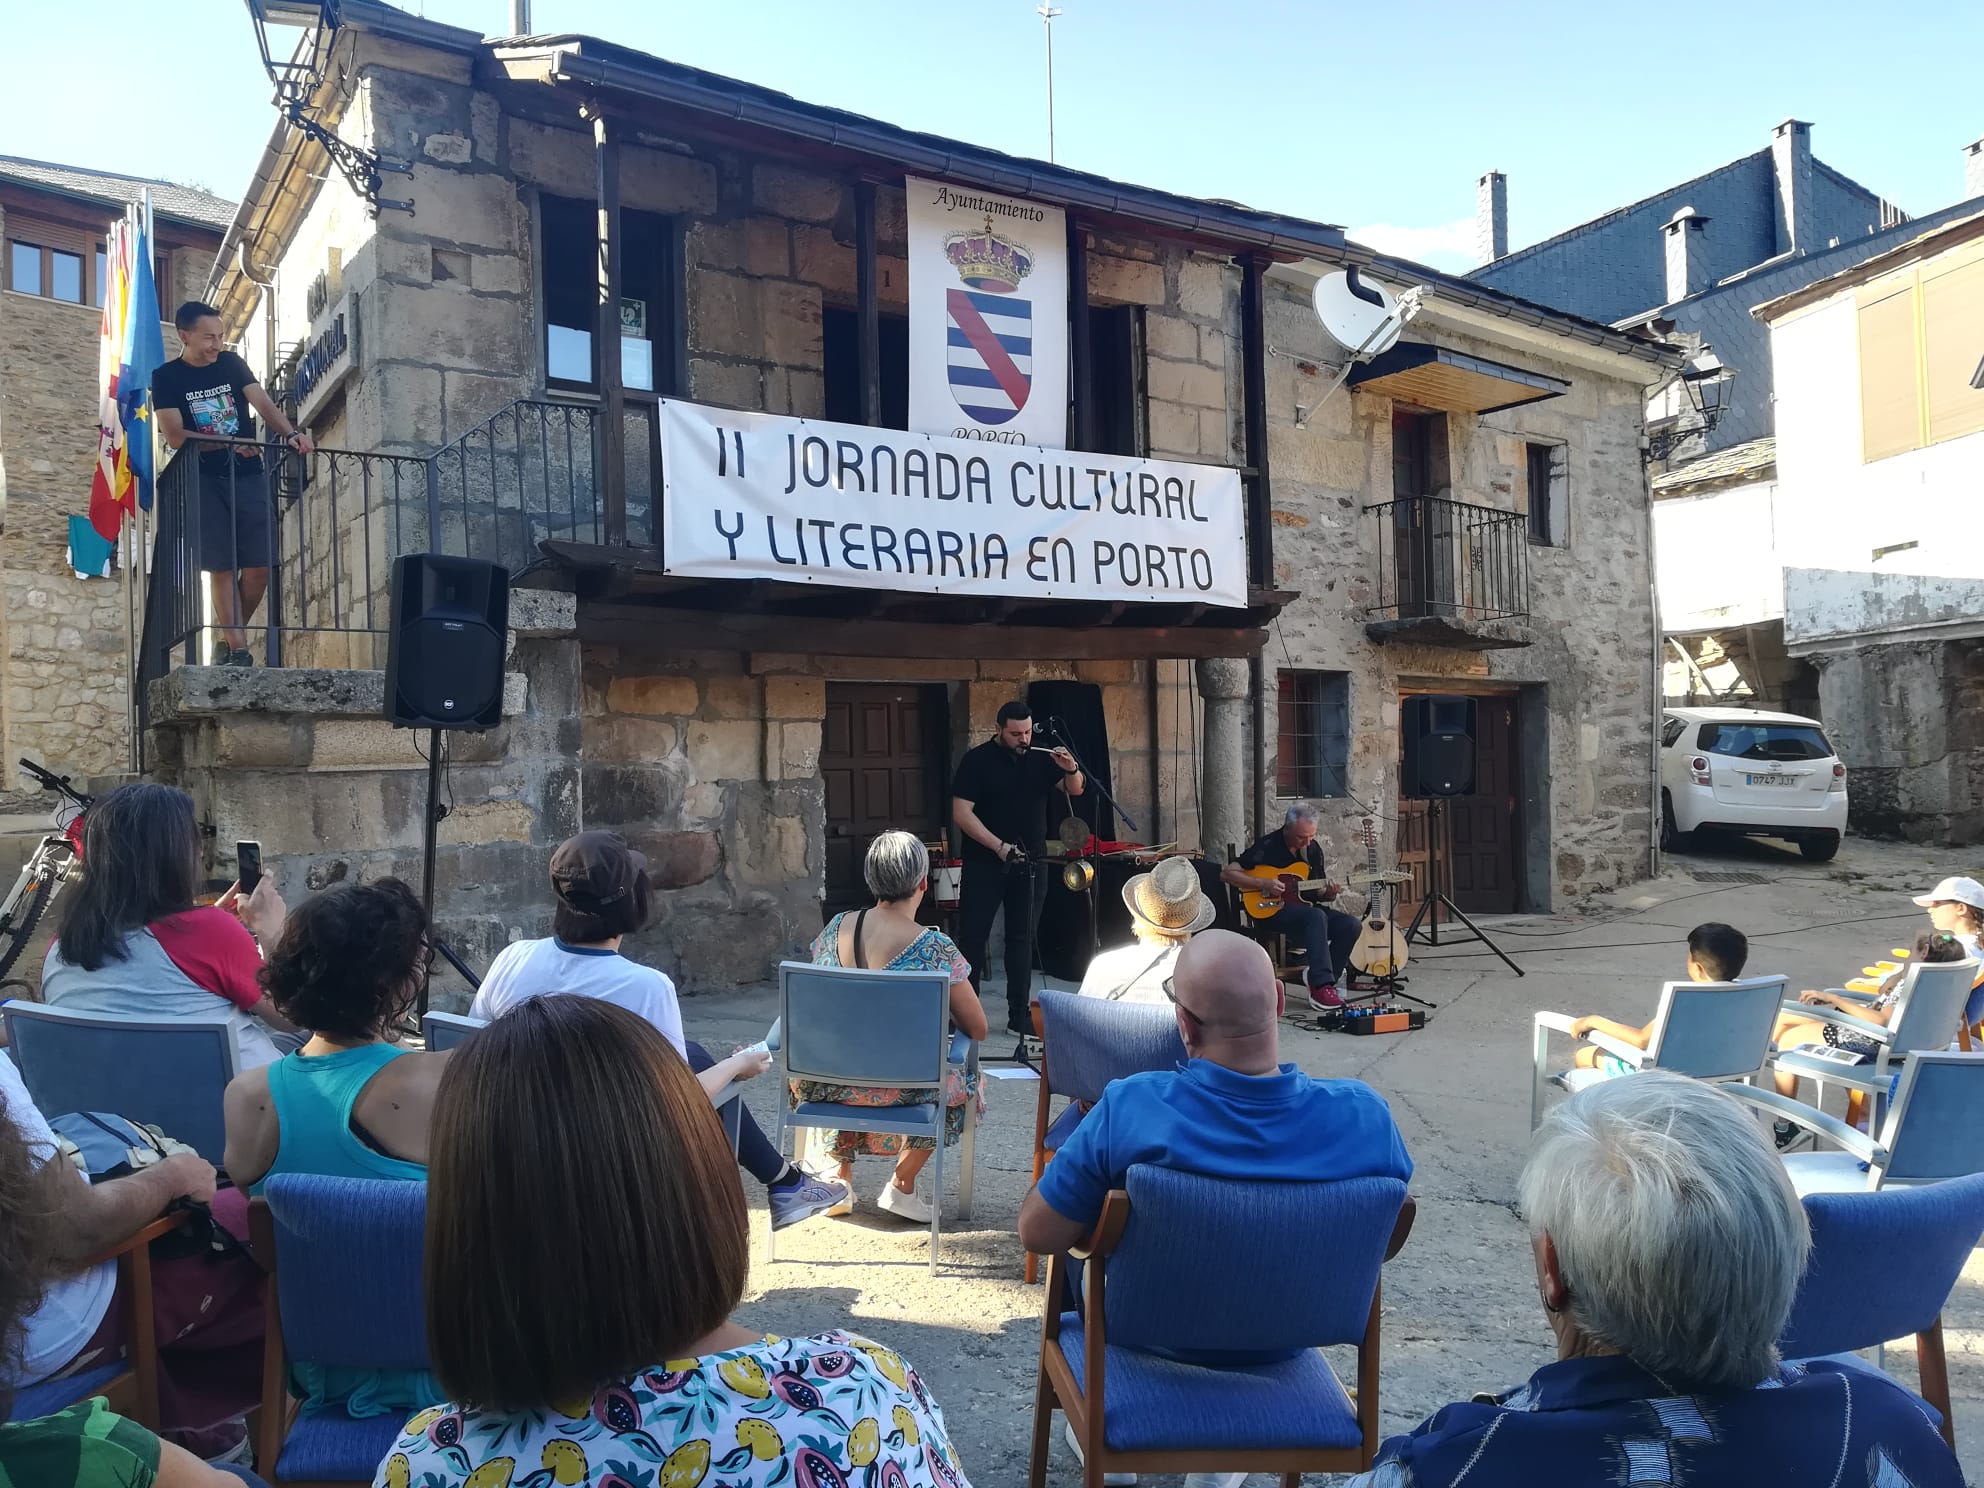 II Jornada Cultural y Literaria en Porto (2)